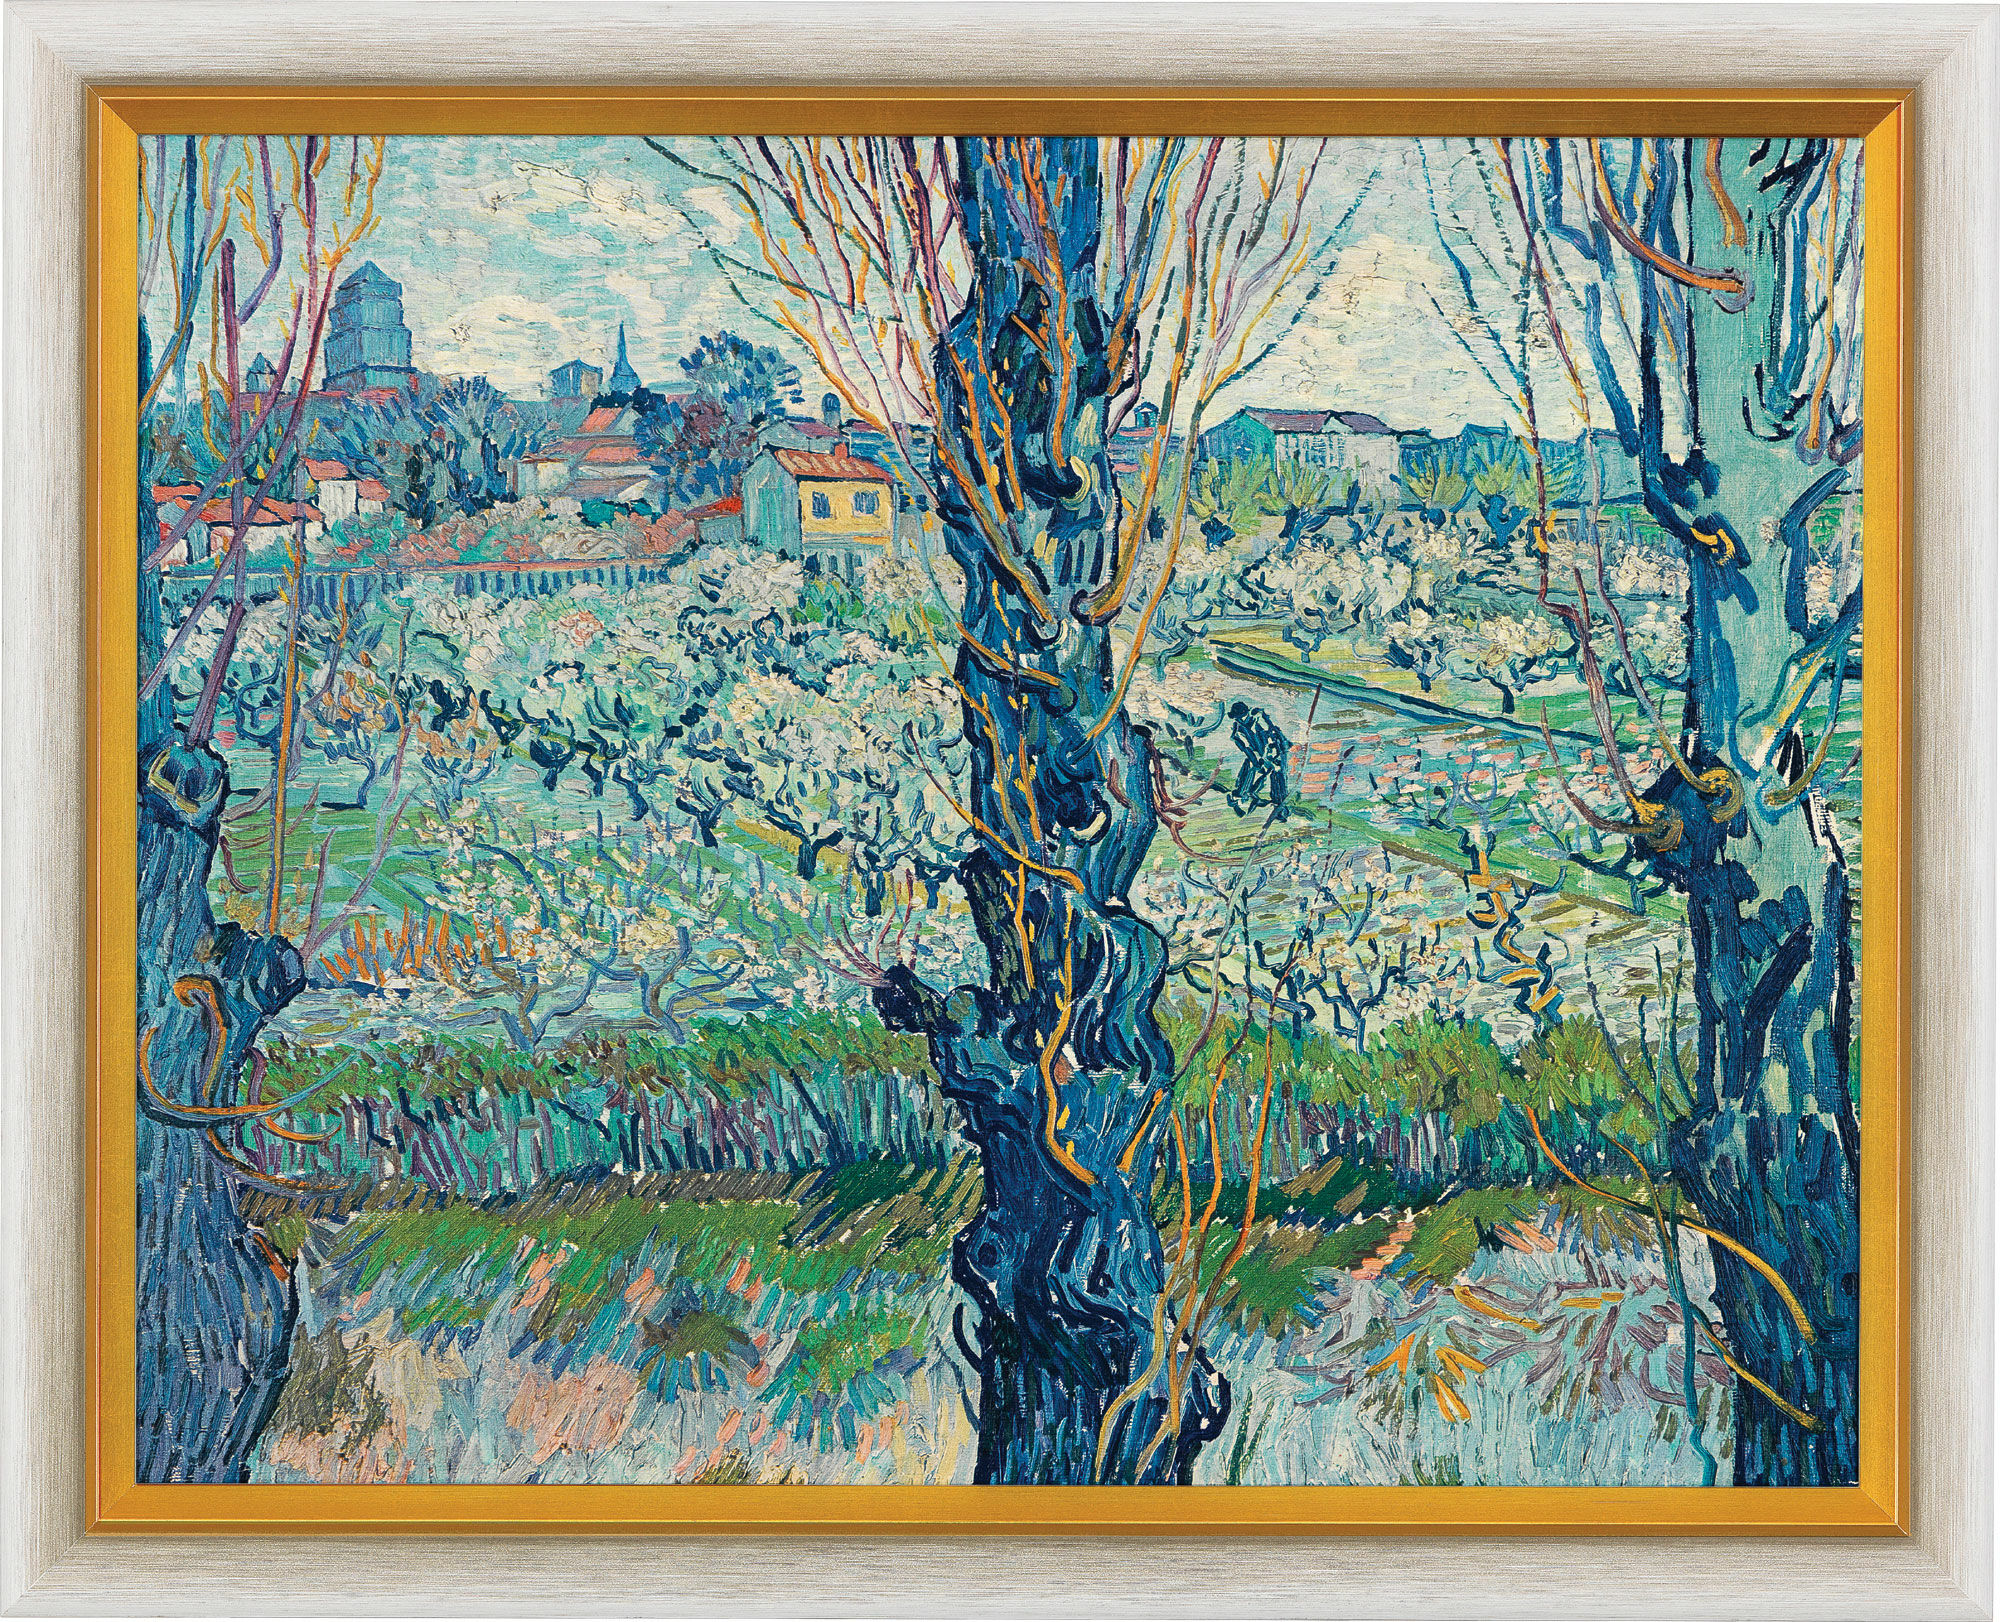 Tableau "Vue d'Arles" (1889), encadré von Vincent van Gogh